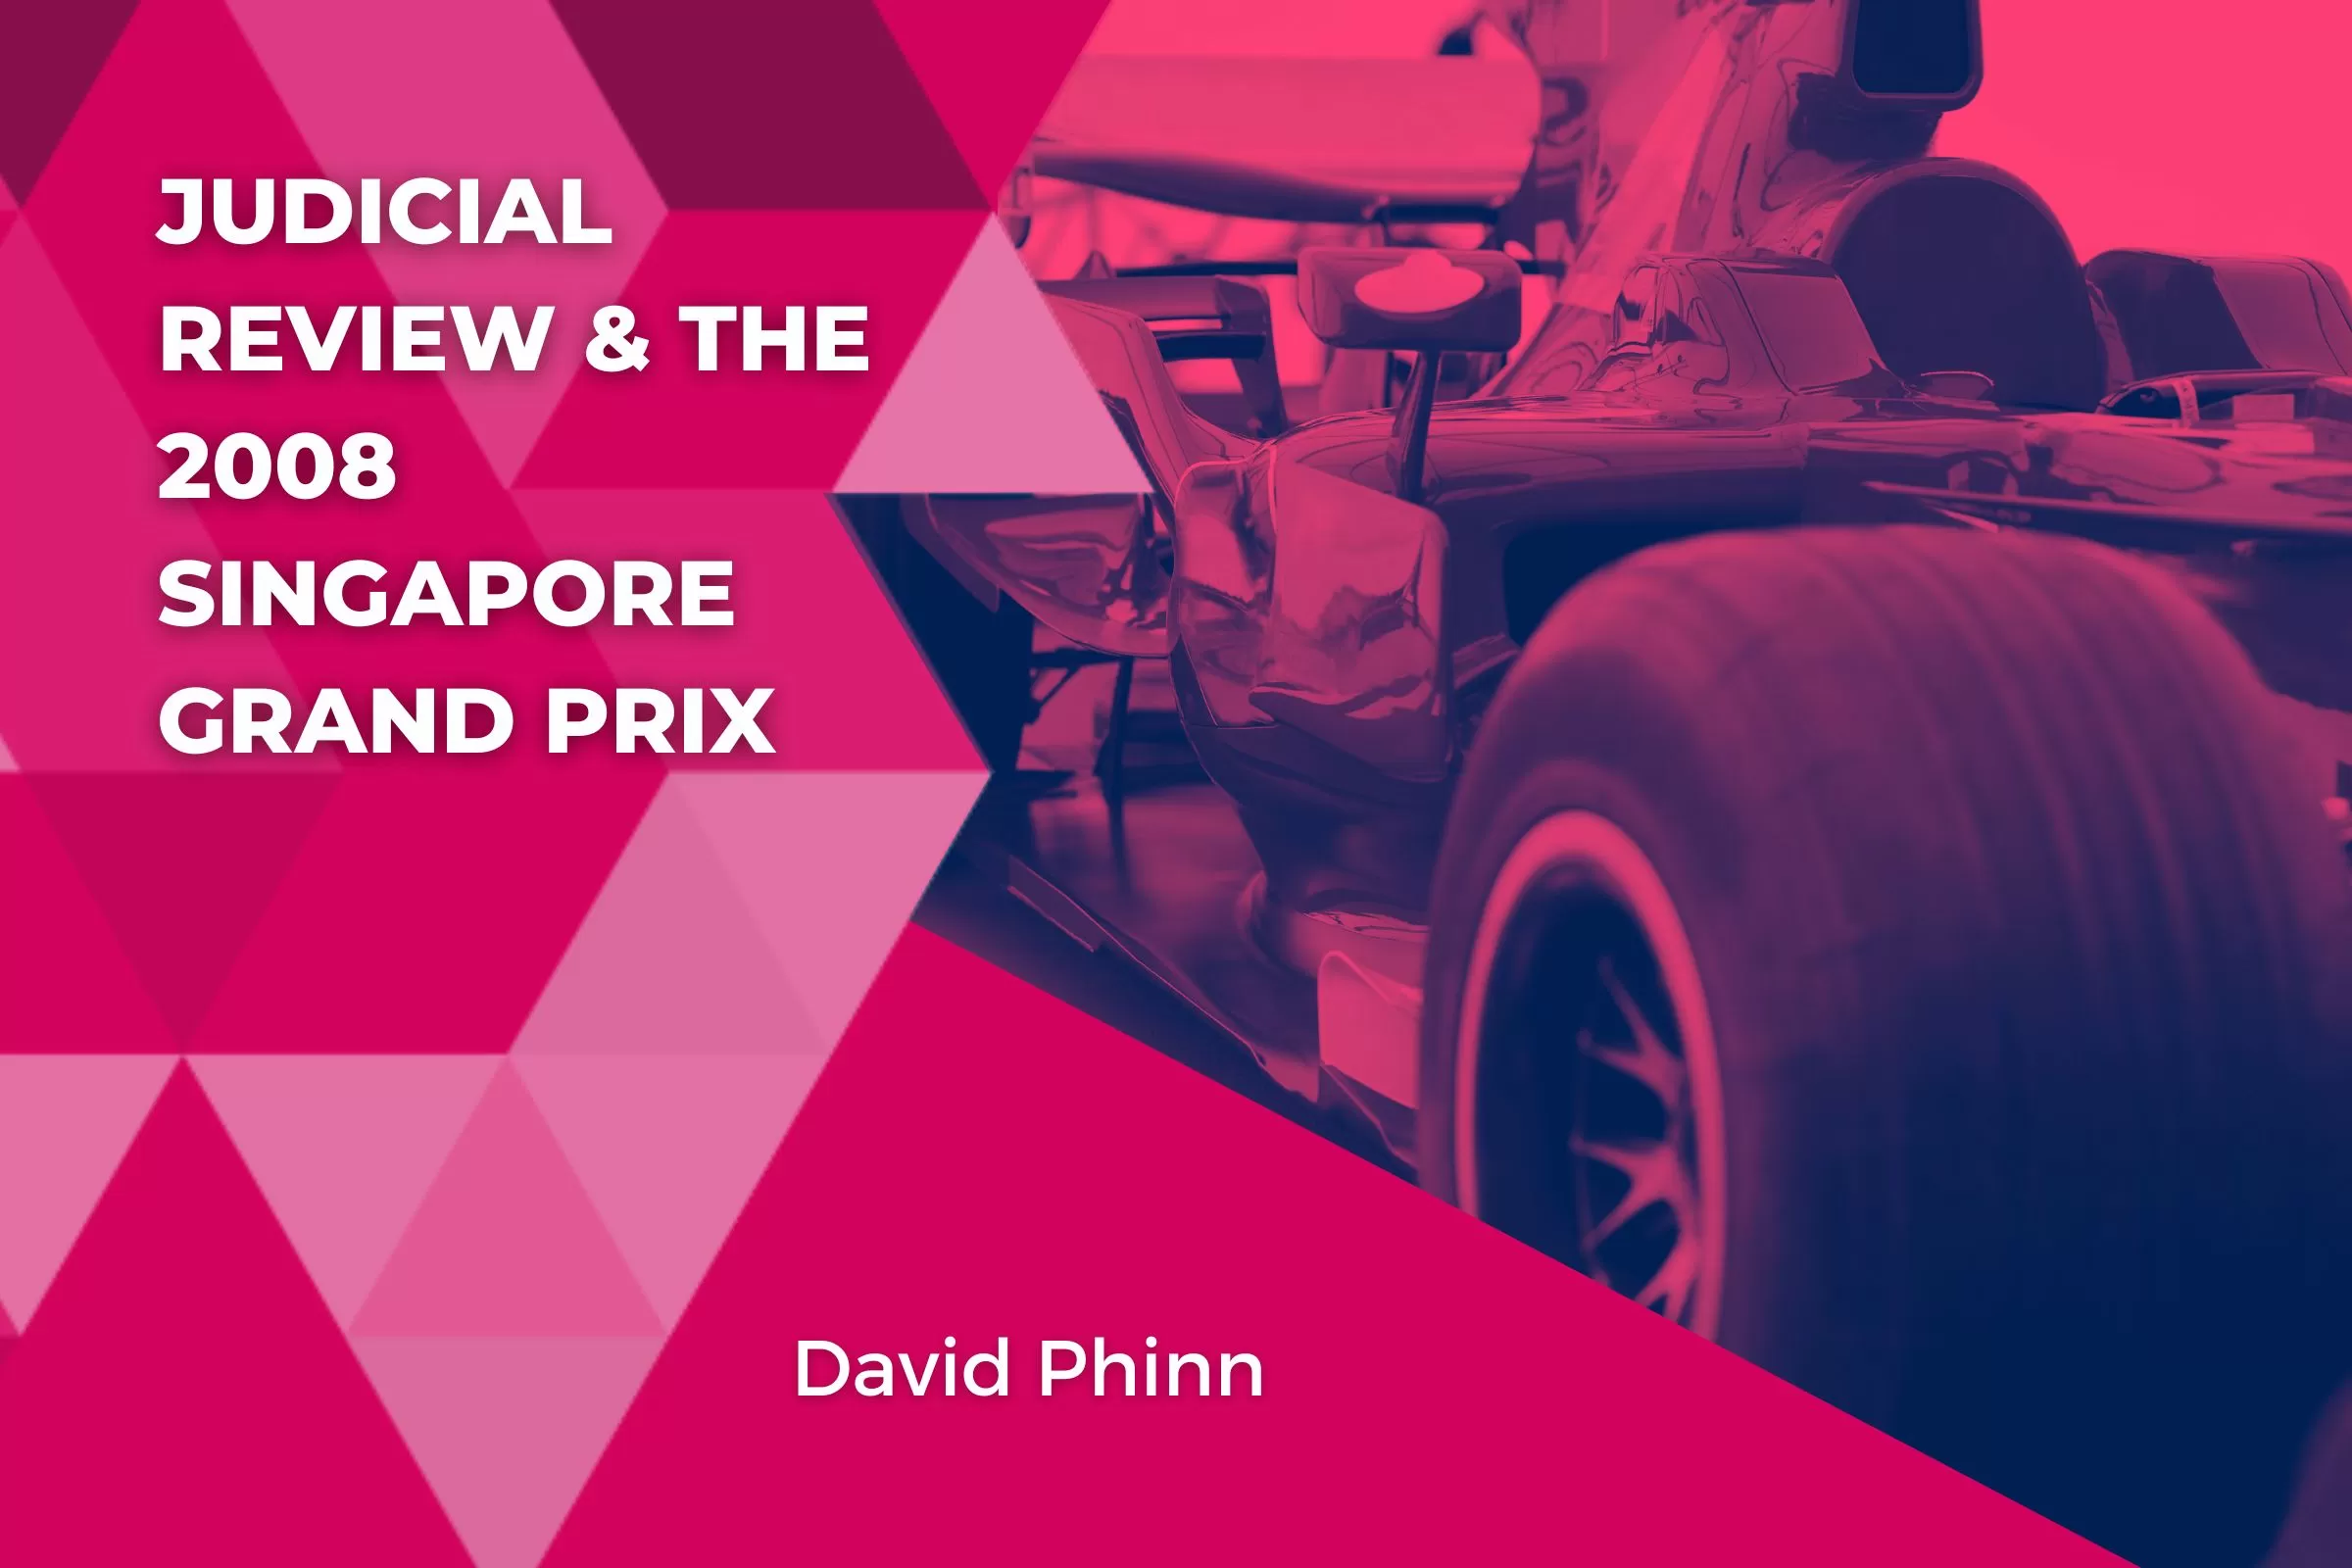 Judicial Review & the 2008 Singapore Grand Prix